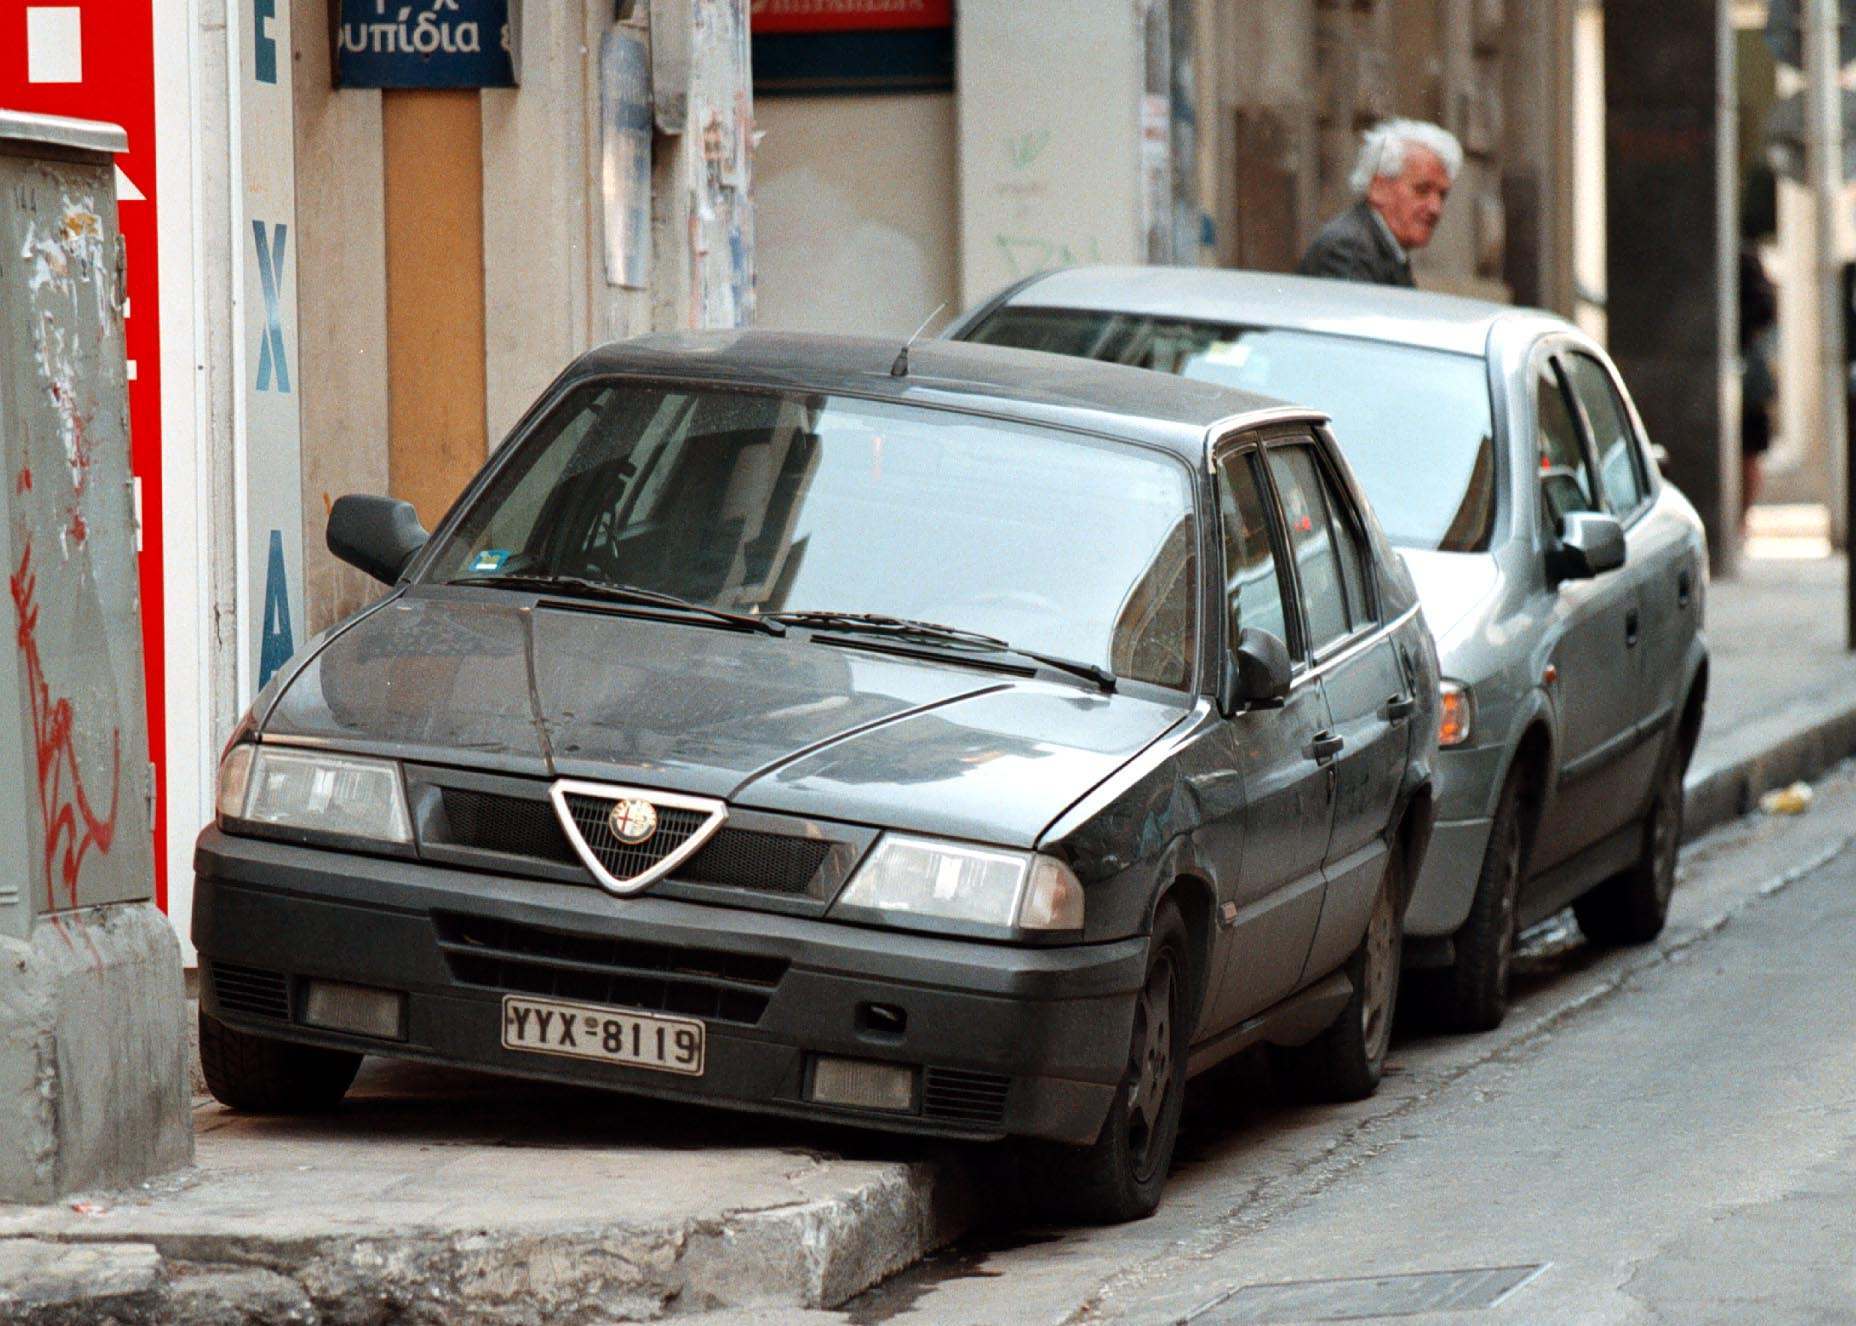 Ιωάννινα: Κατέστρεφε τα λάστιχα παρκαρισμένων αυτοκινήτων